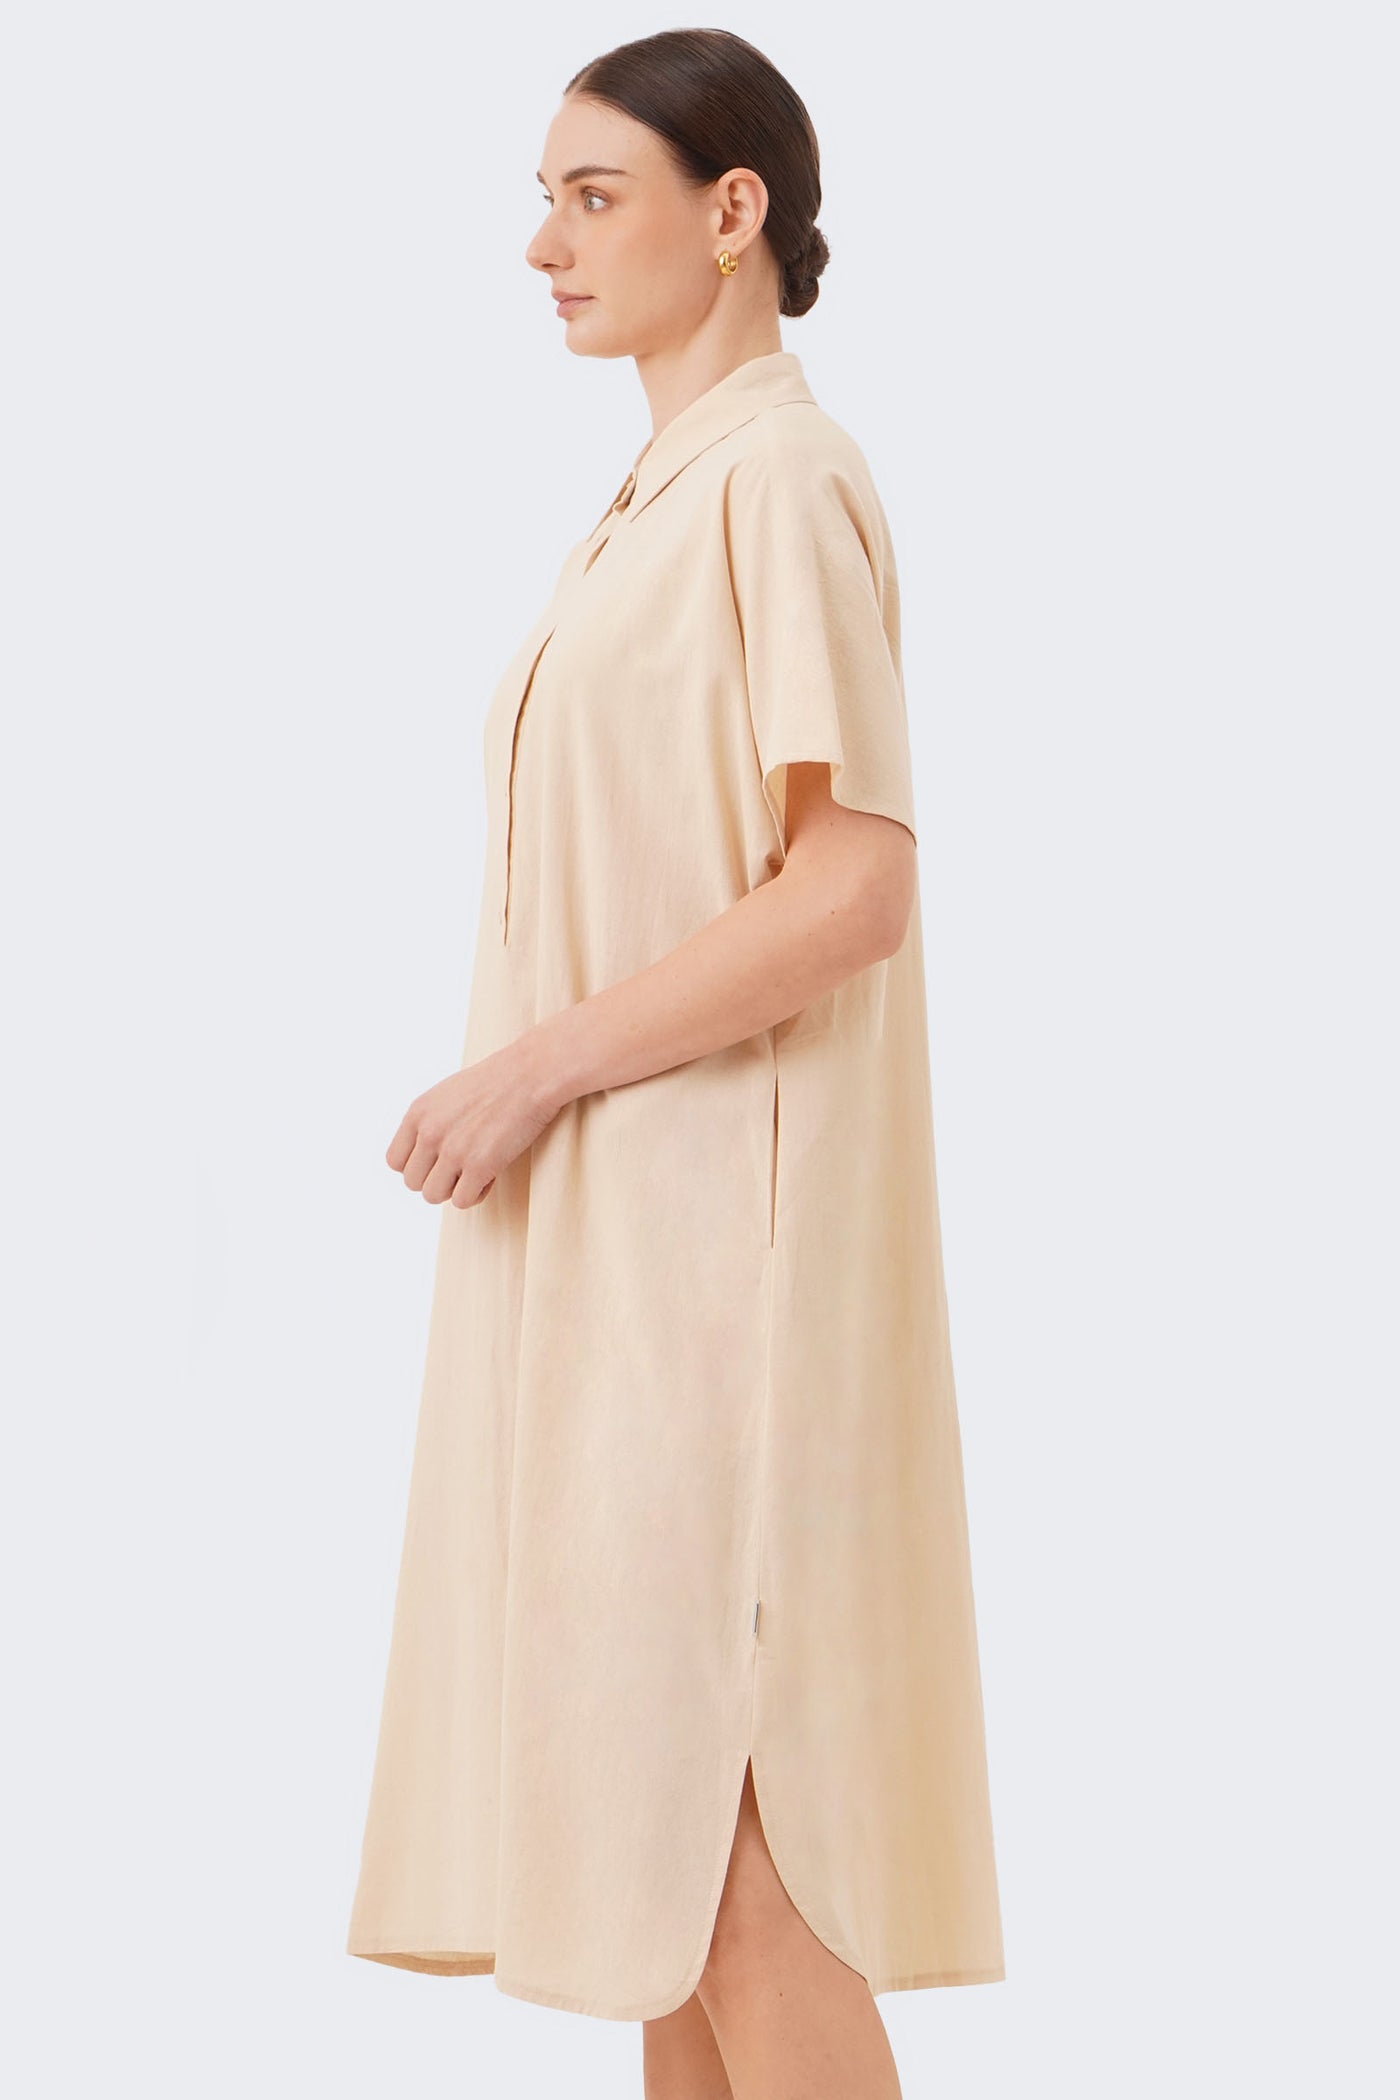 Women's Midi Extended Short Sleeve Dress